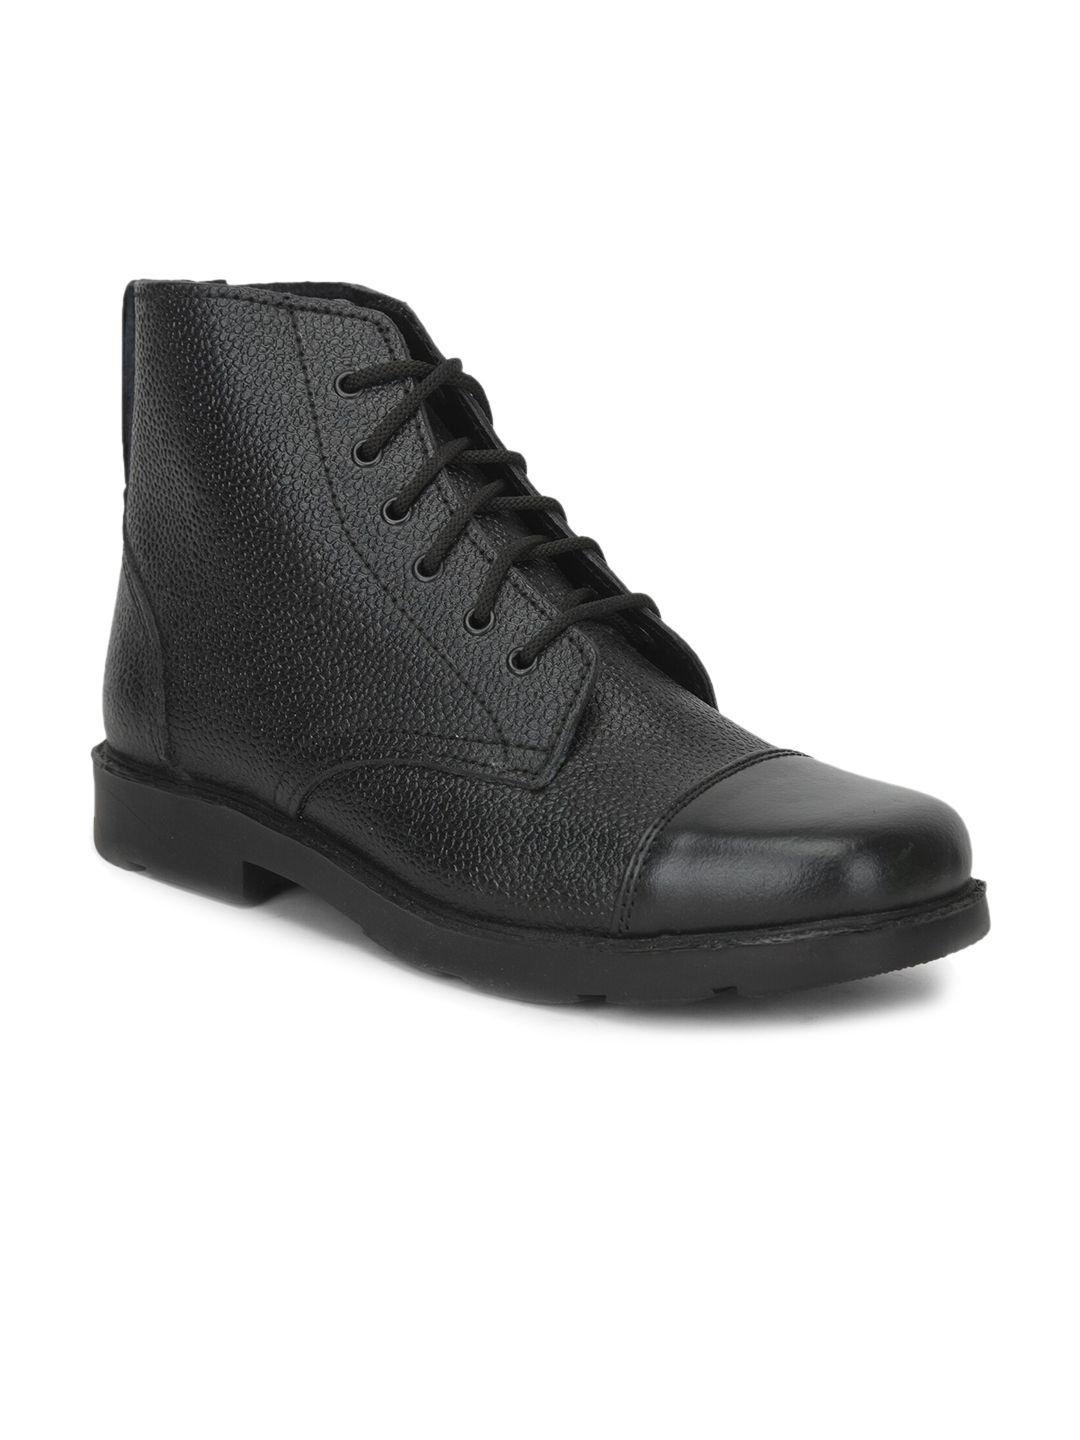 liberty men black solid formal boots